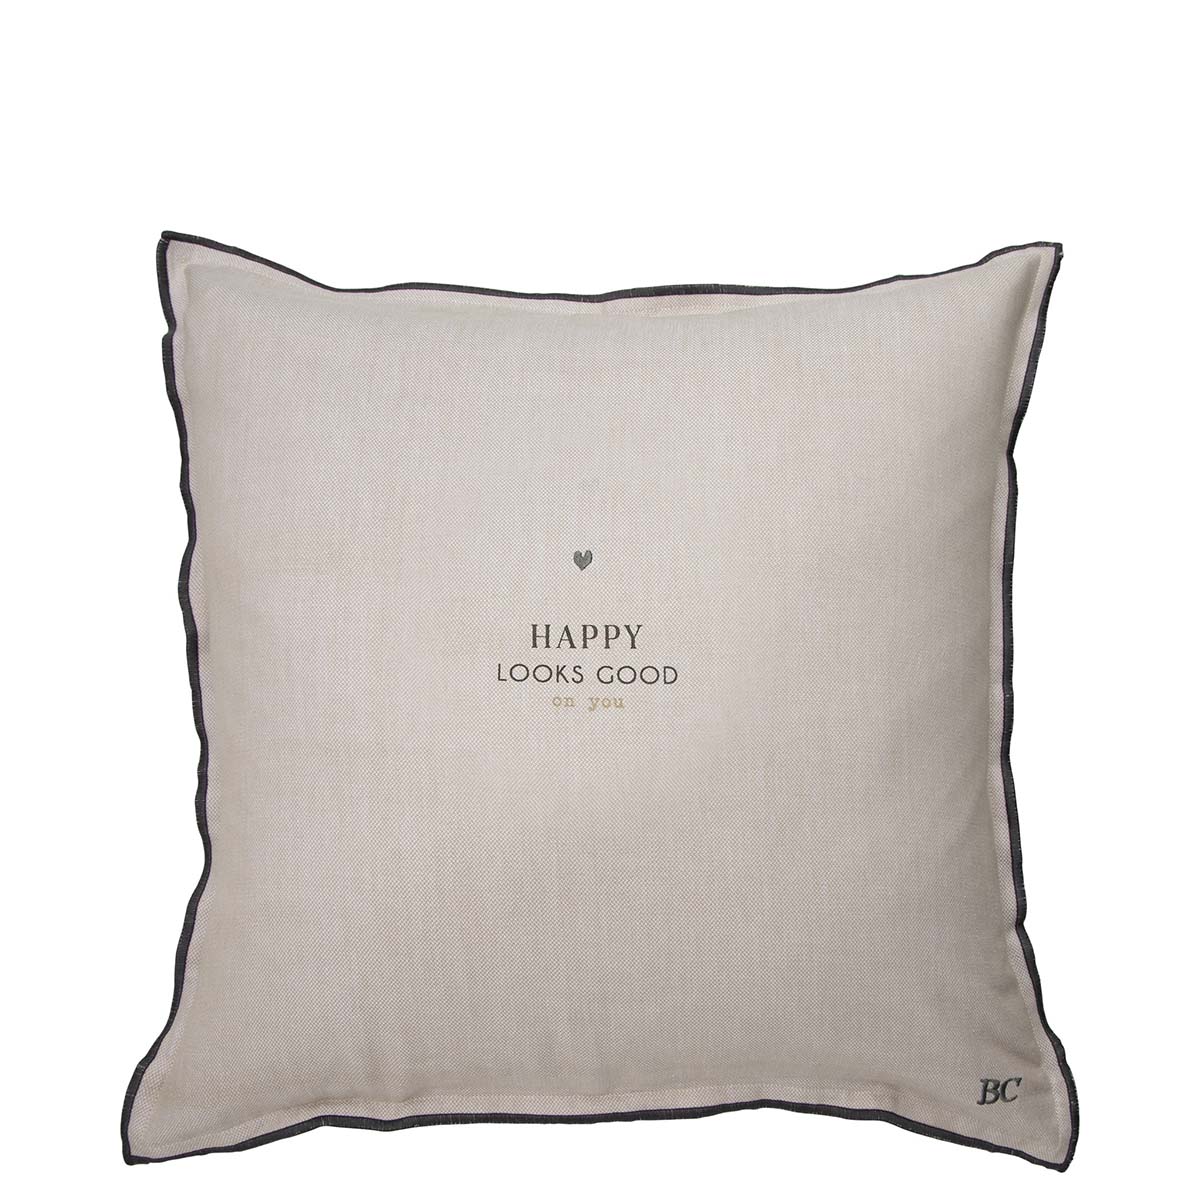 "Happy Looks Good" pillow